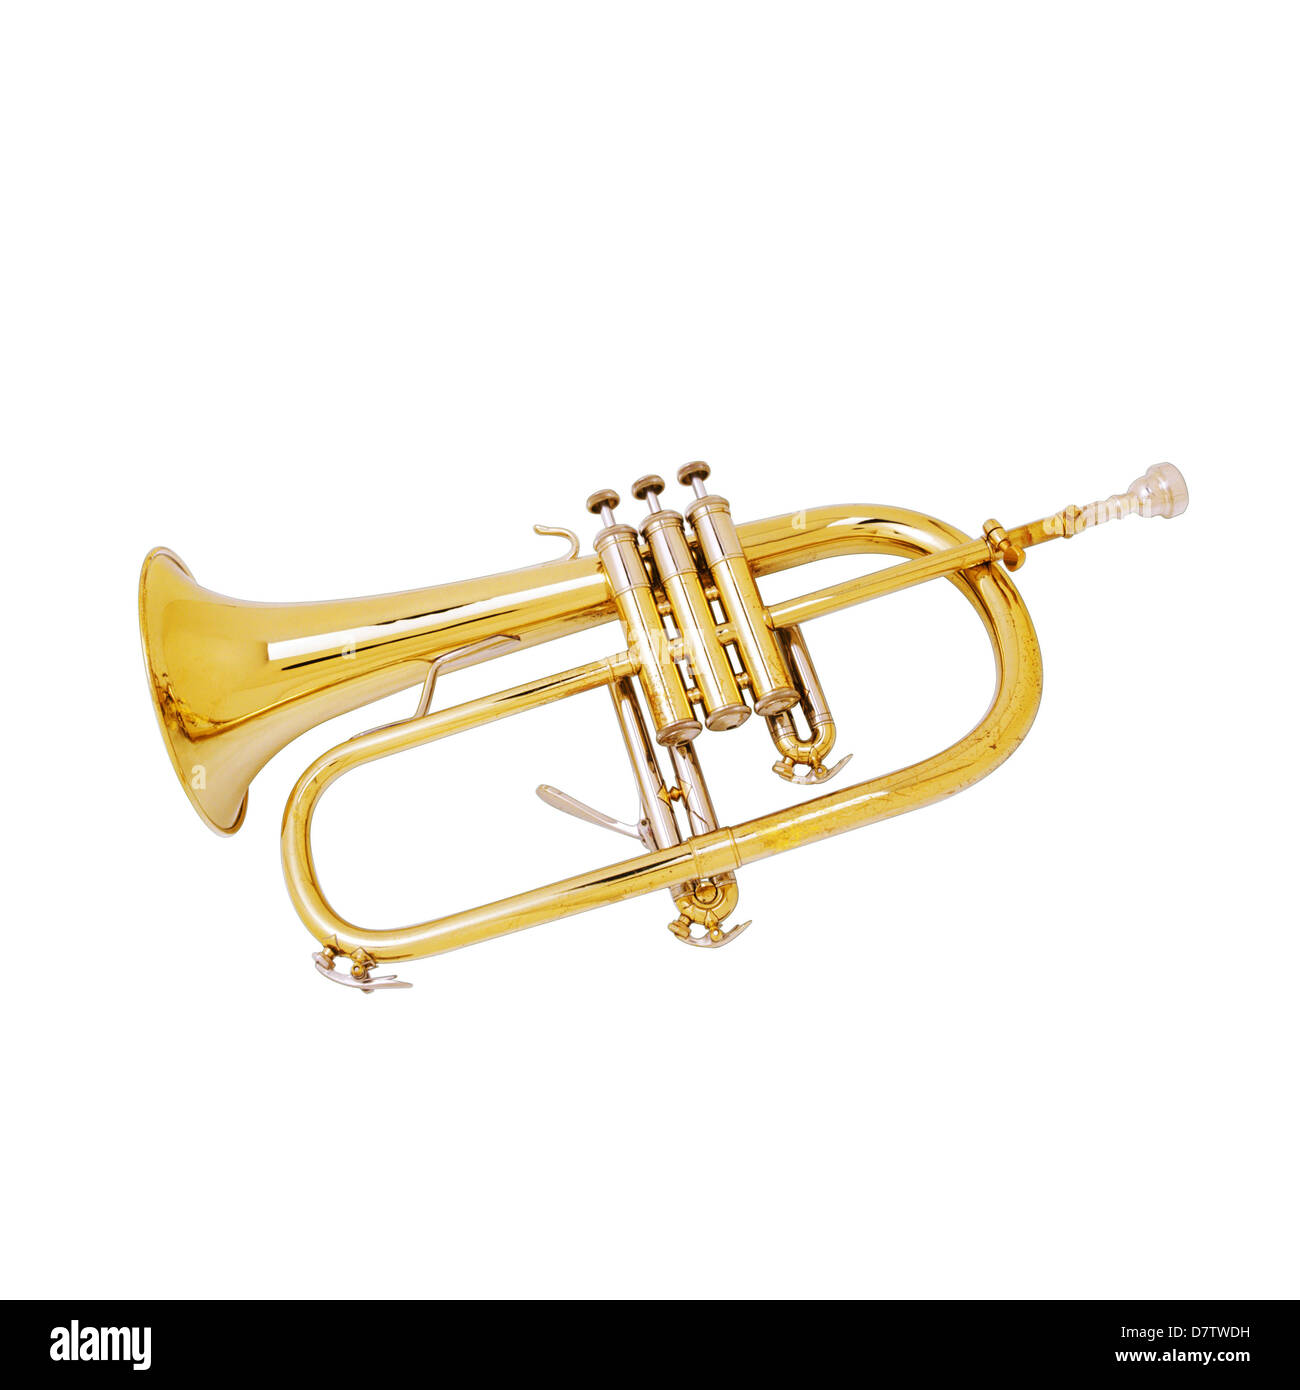 Trombone musical instrument Stock Photo